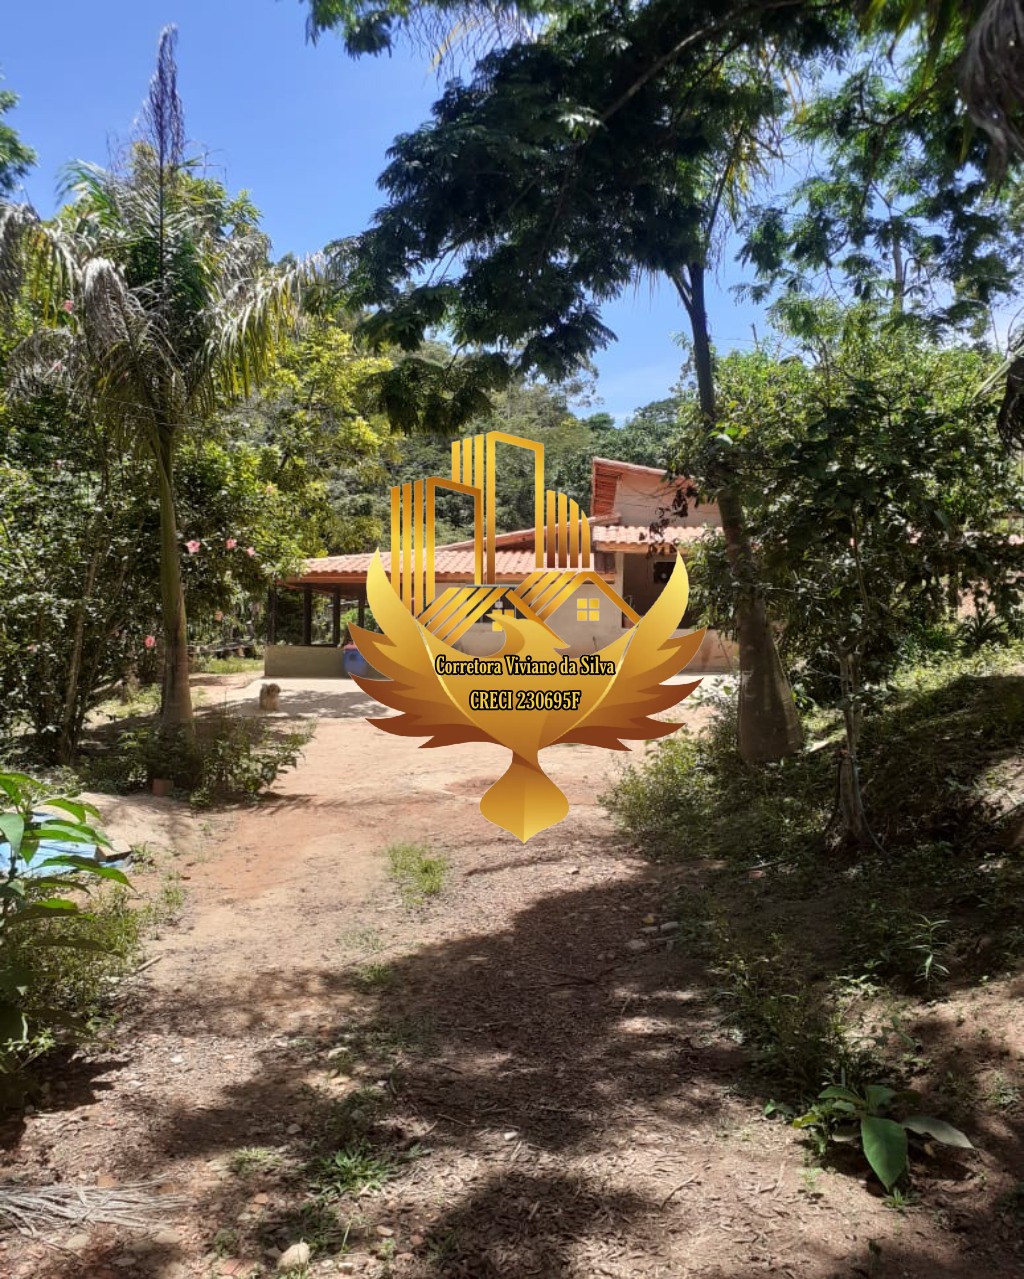 Chácara de 7.400 m² em Cunha, SP